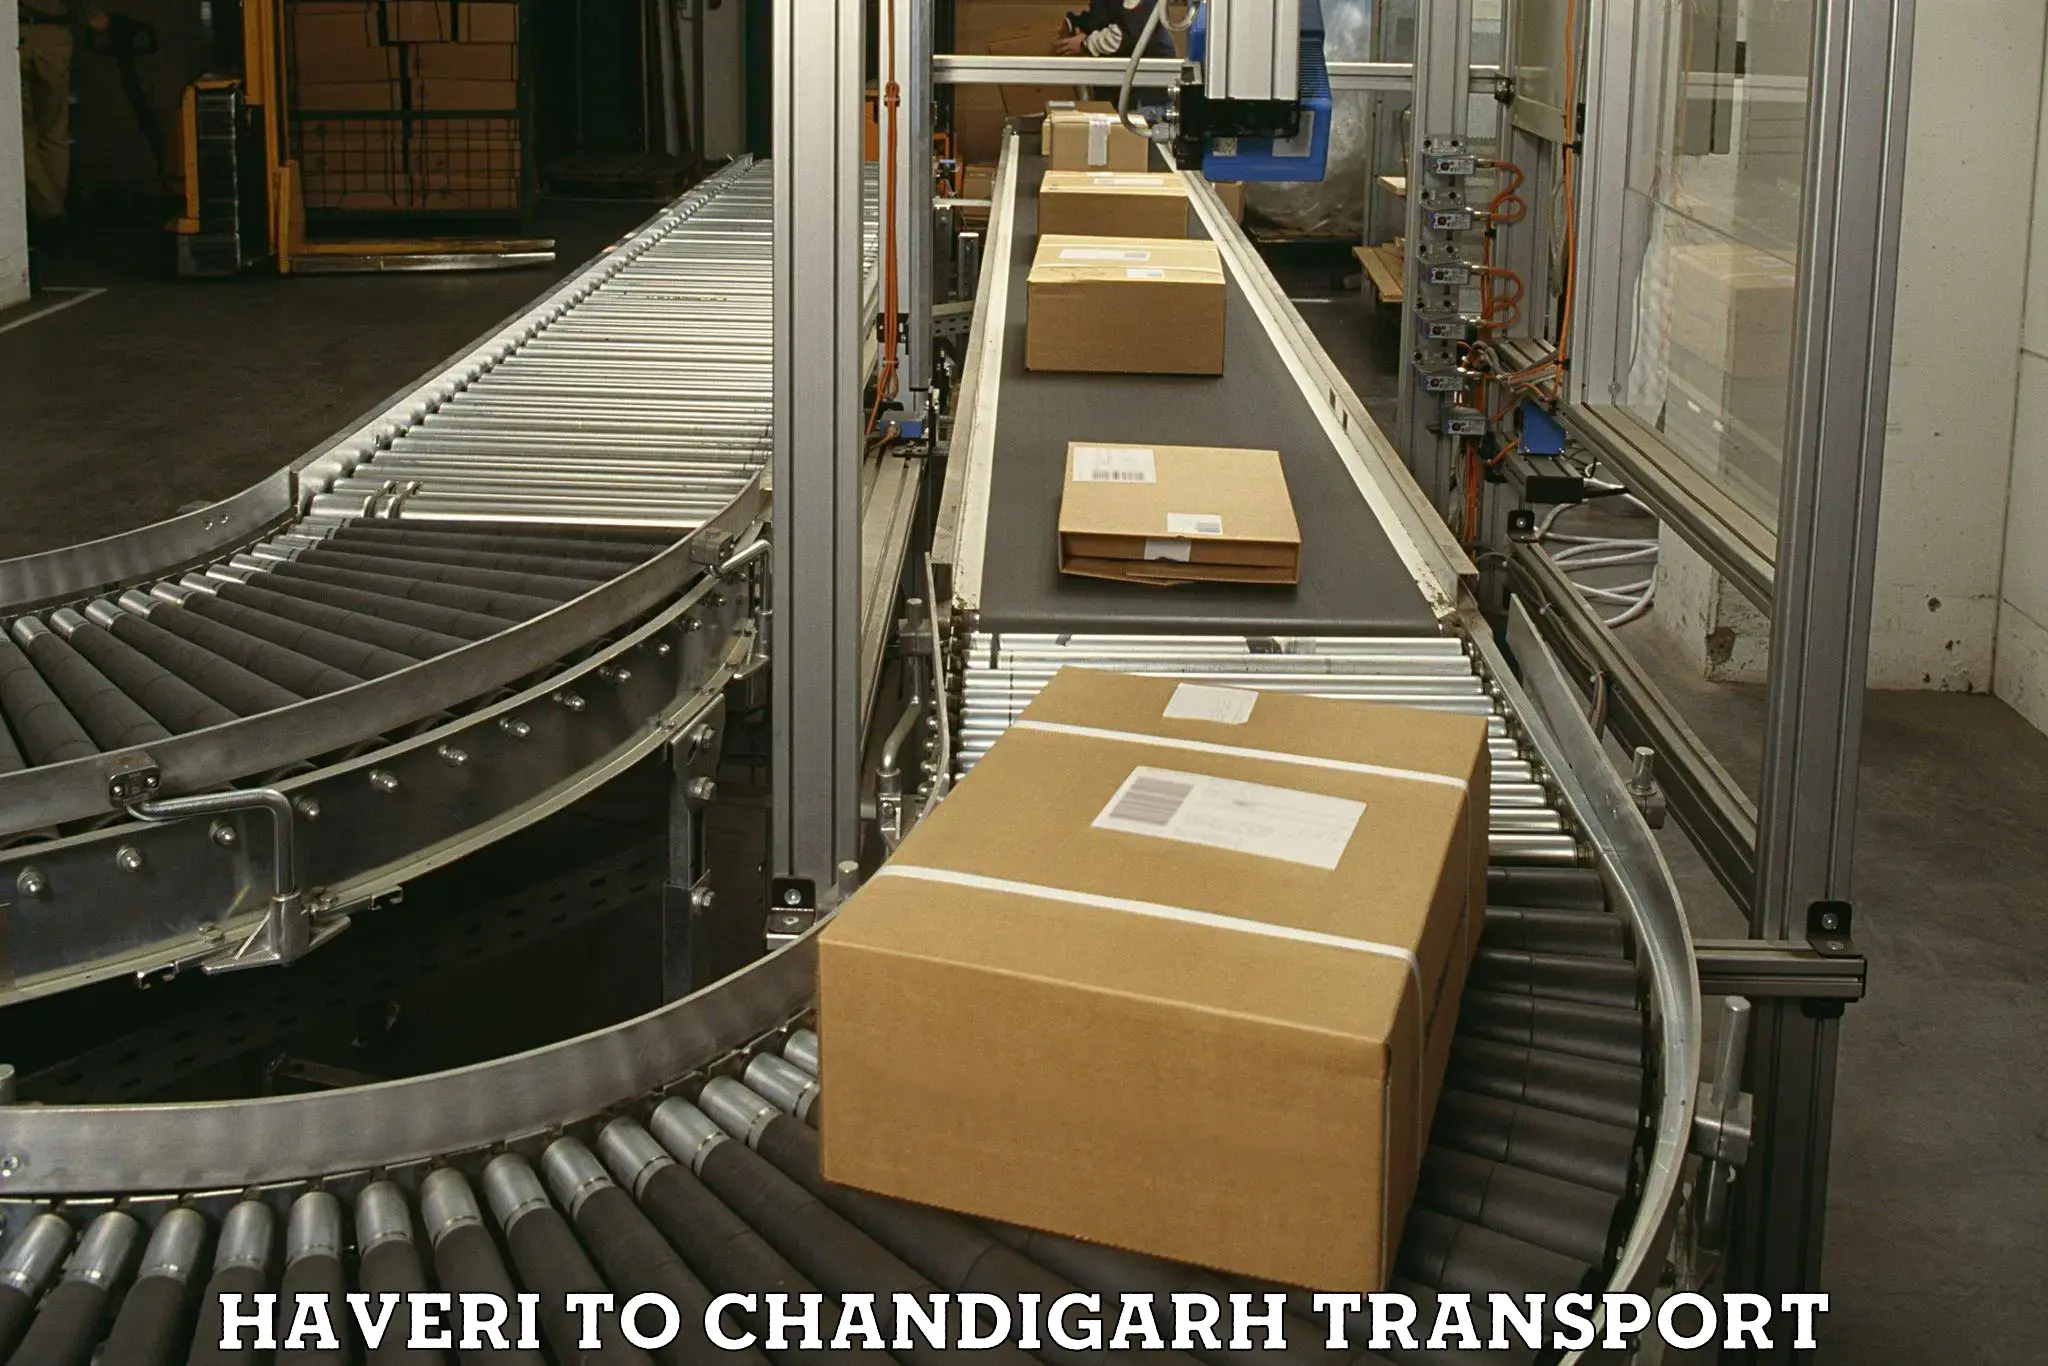 Online transport service Haveri to Chandigarh